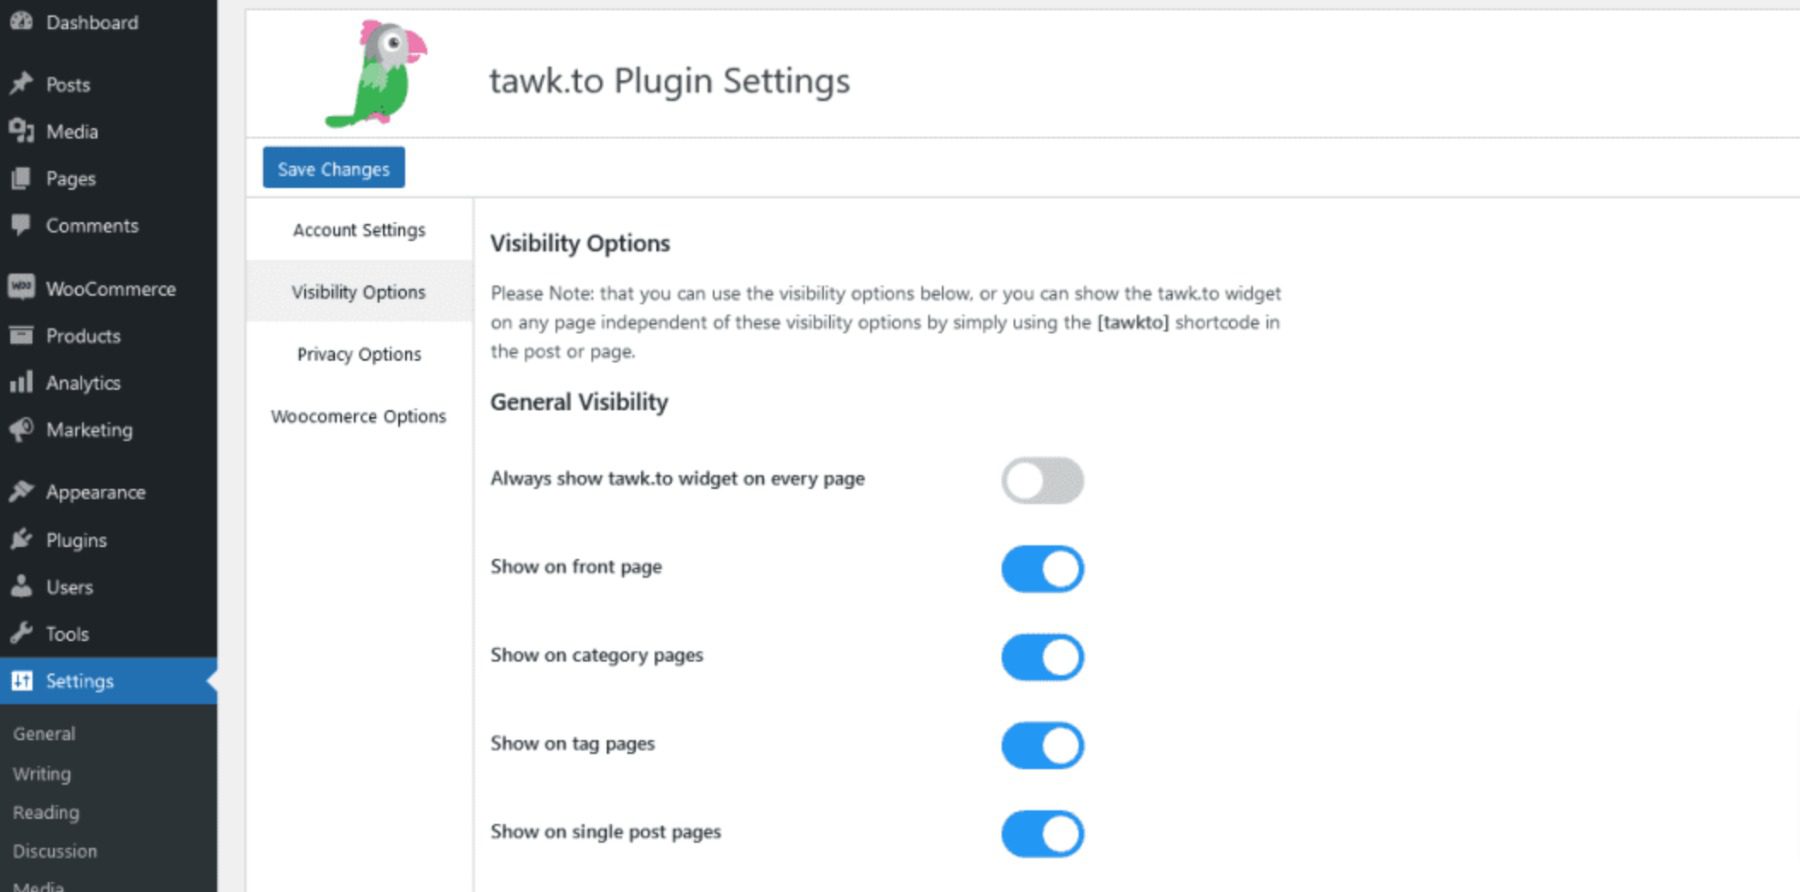 tawk.to plugin settings